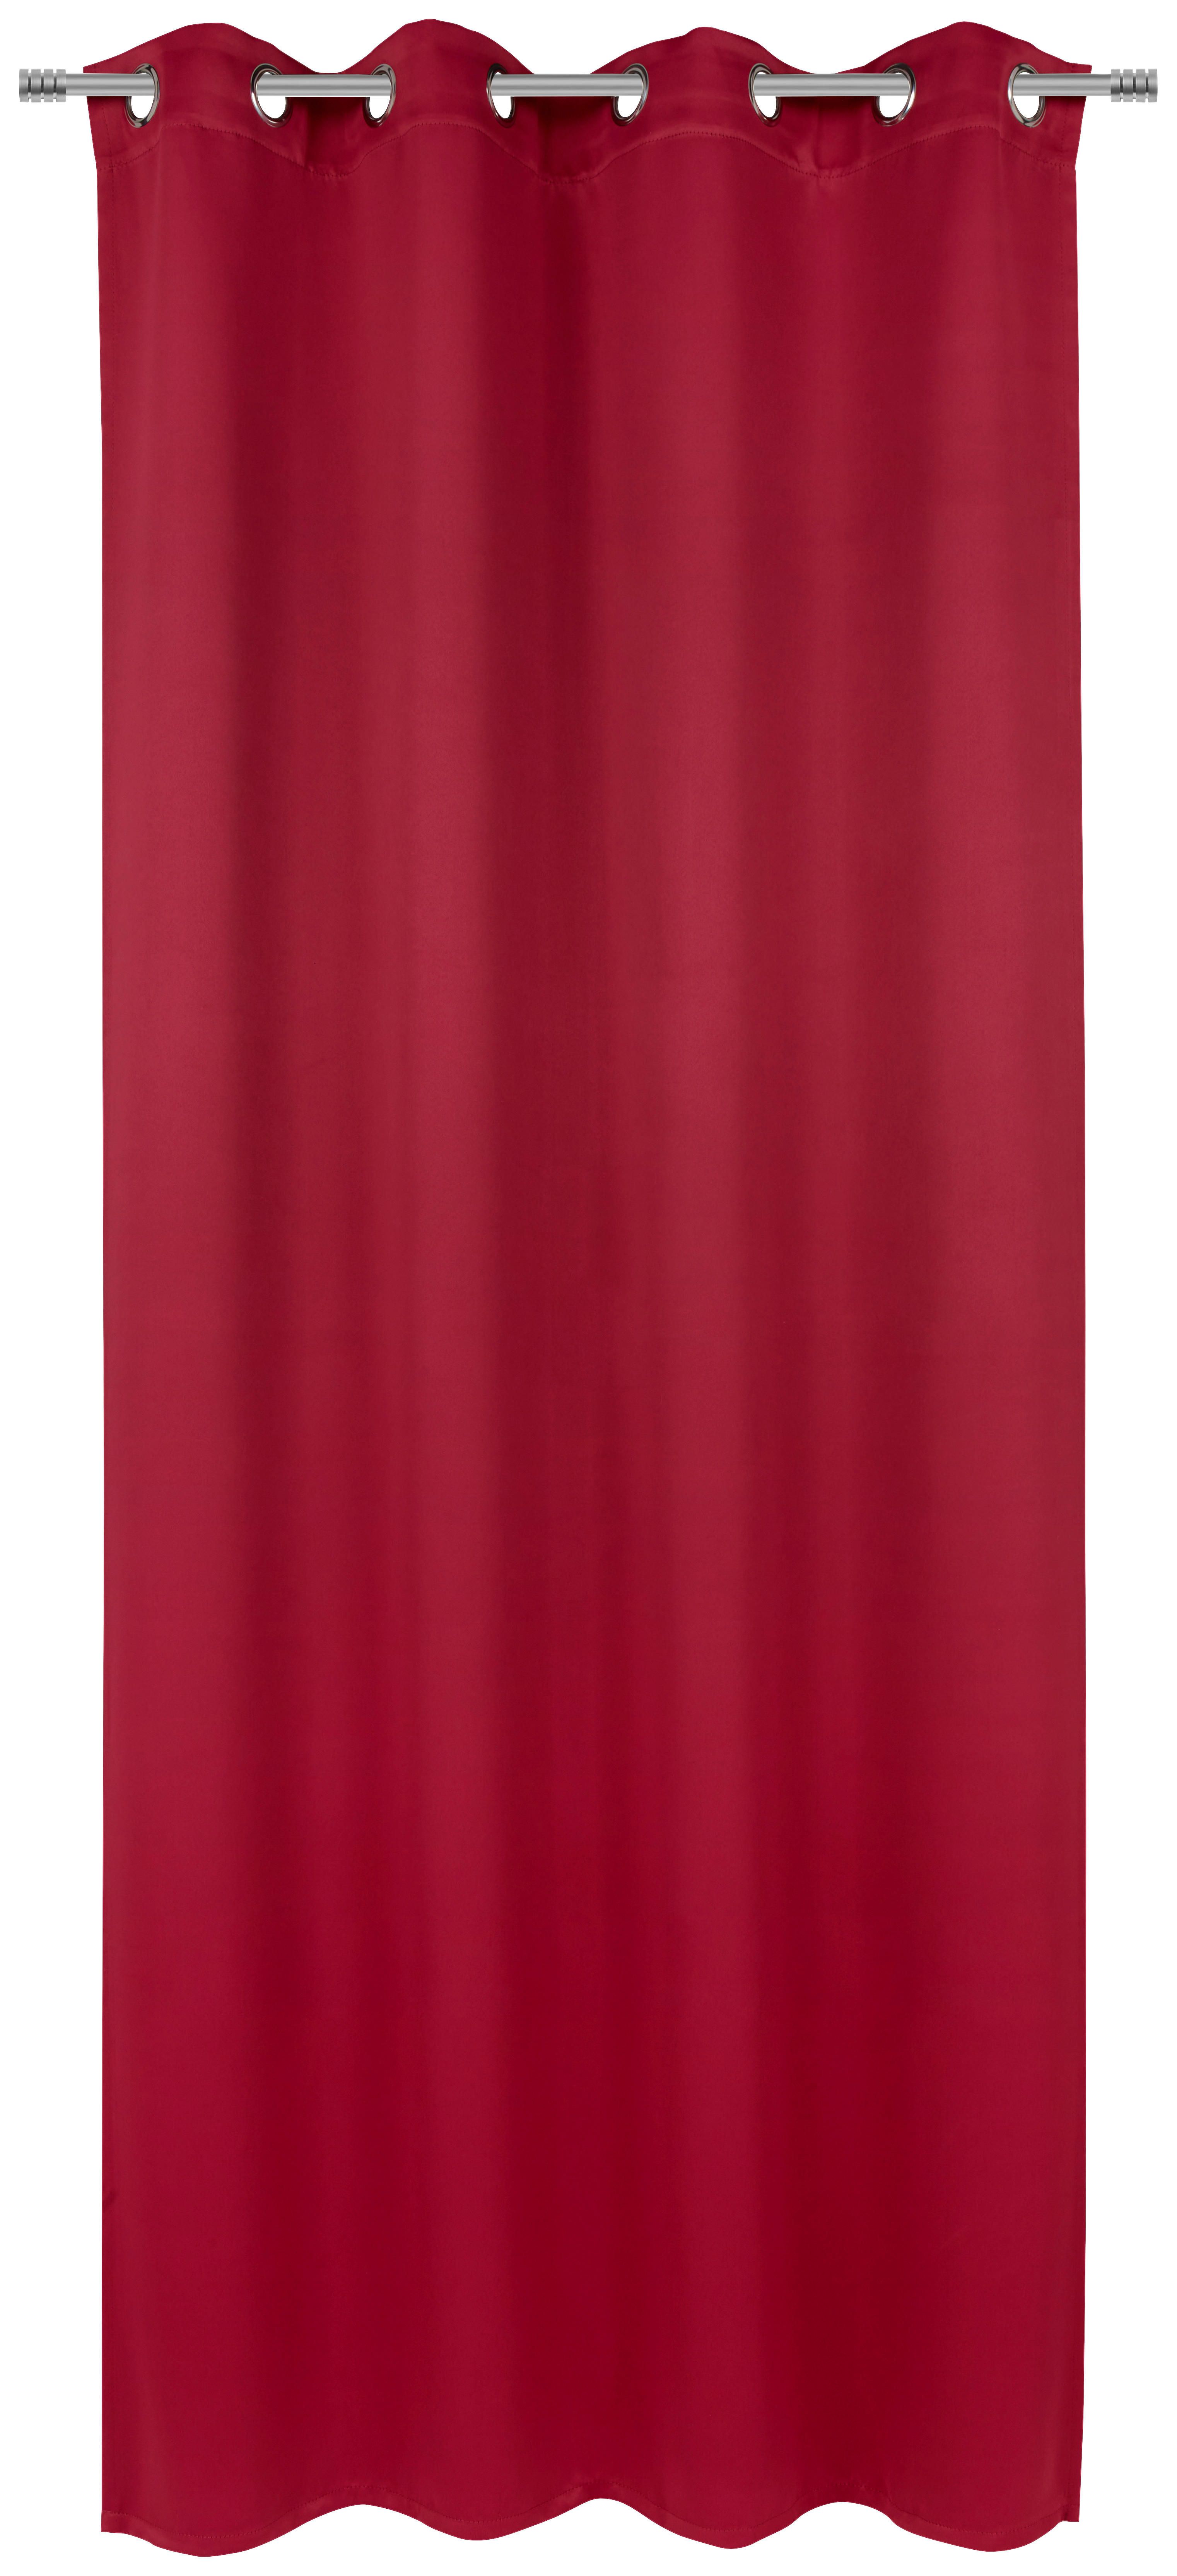 GARDINLÄNGD mörkläggning  - vinröd, Basics, textil (140/245cm) - Esposa